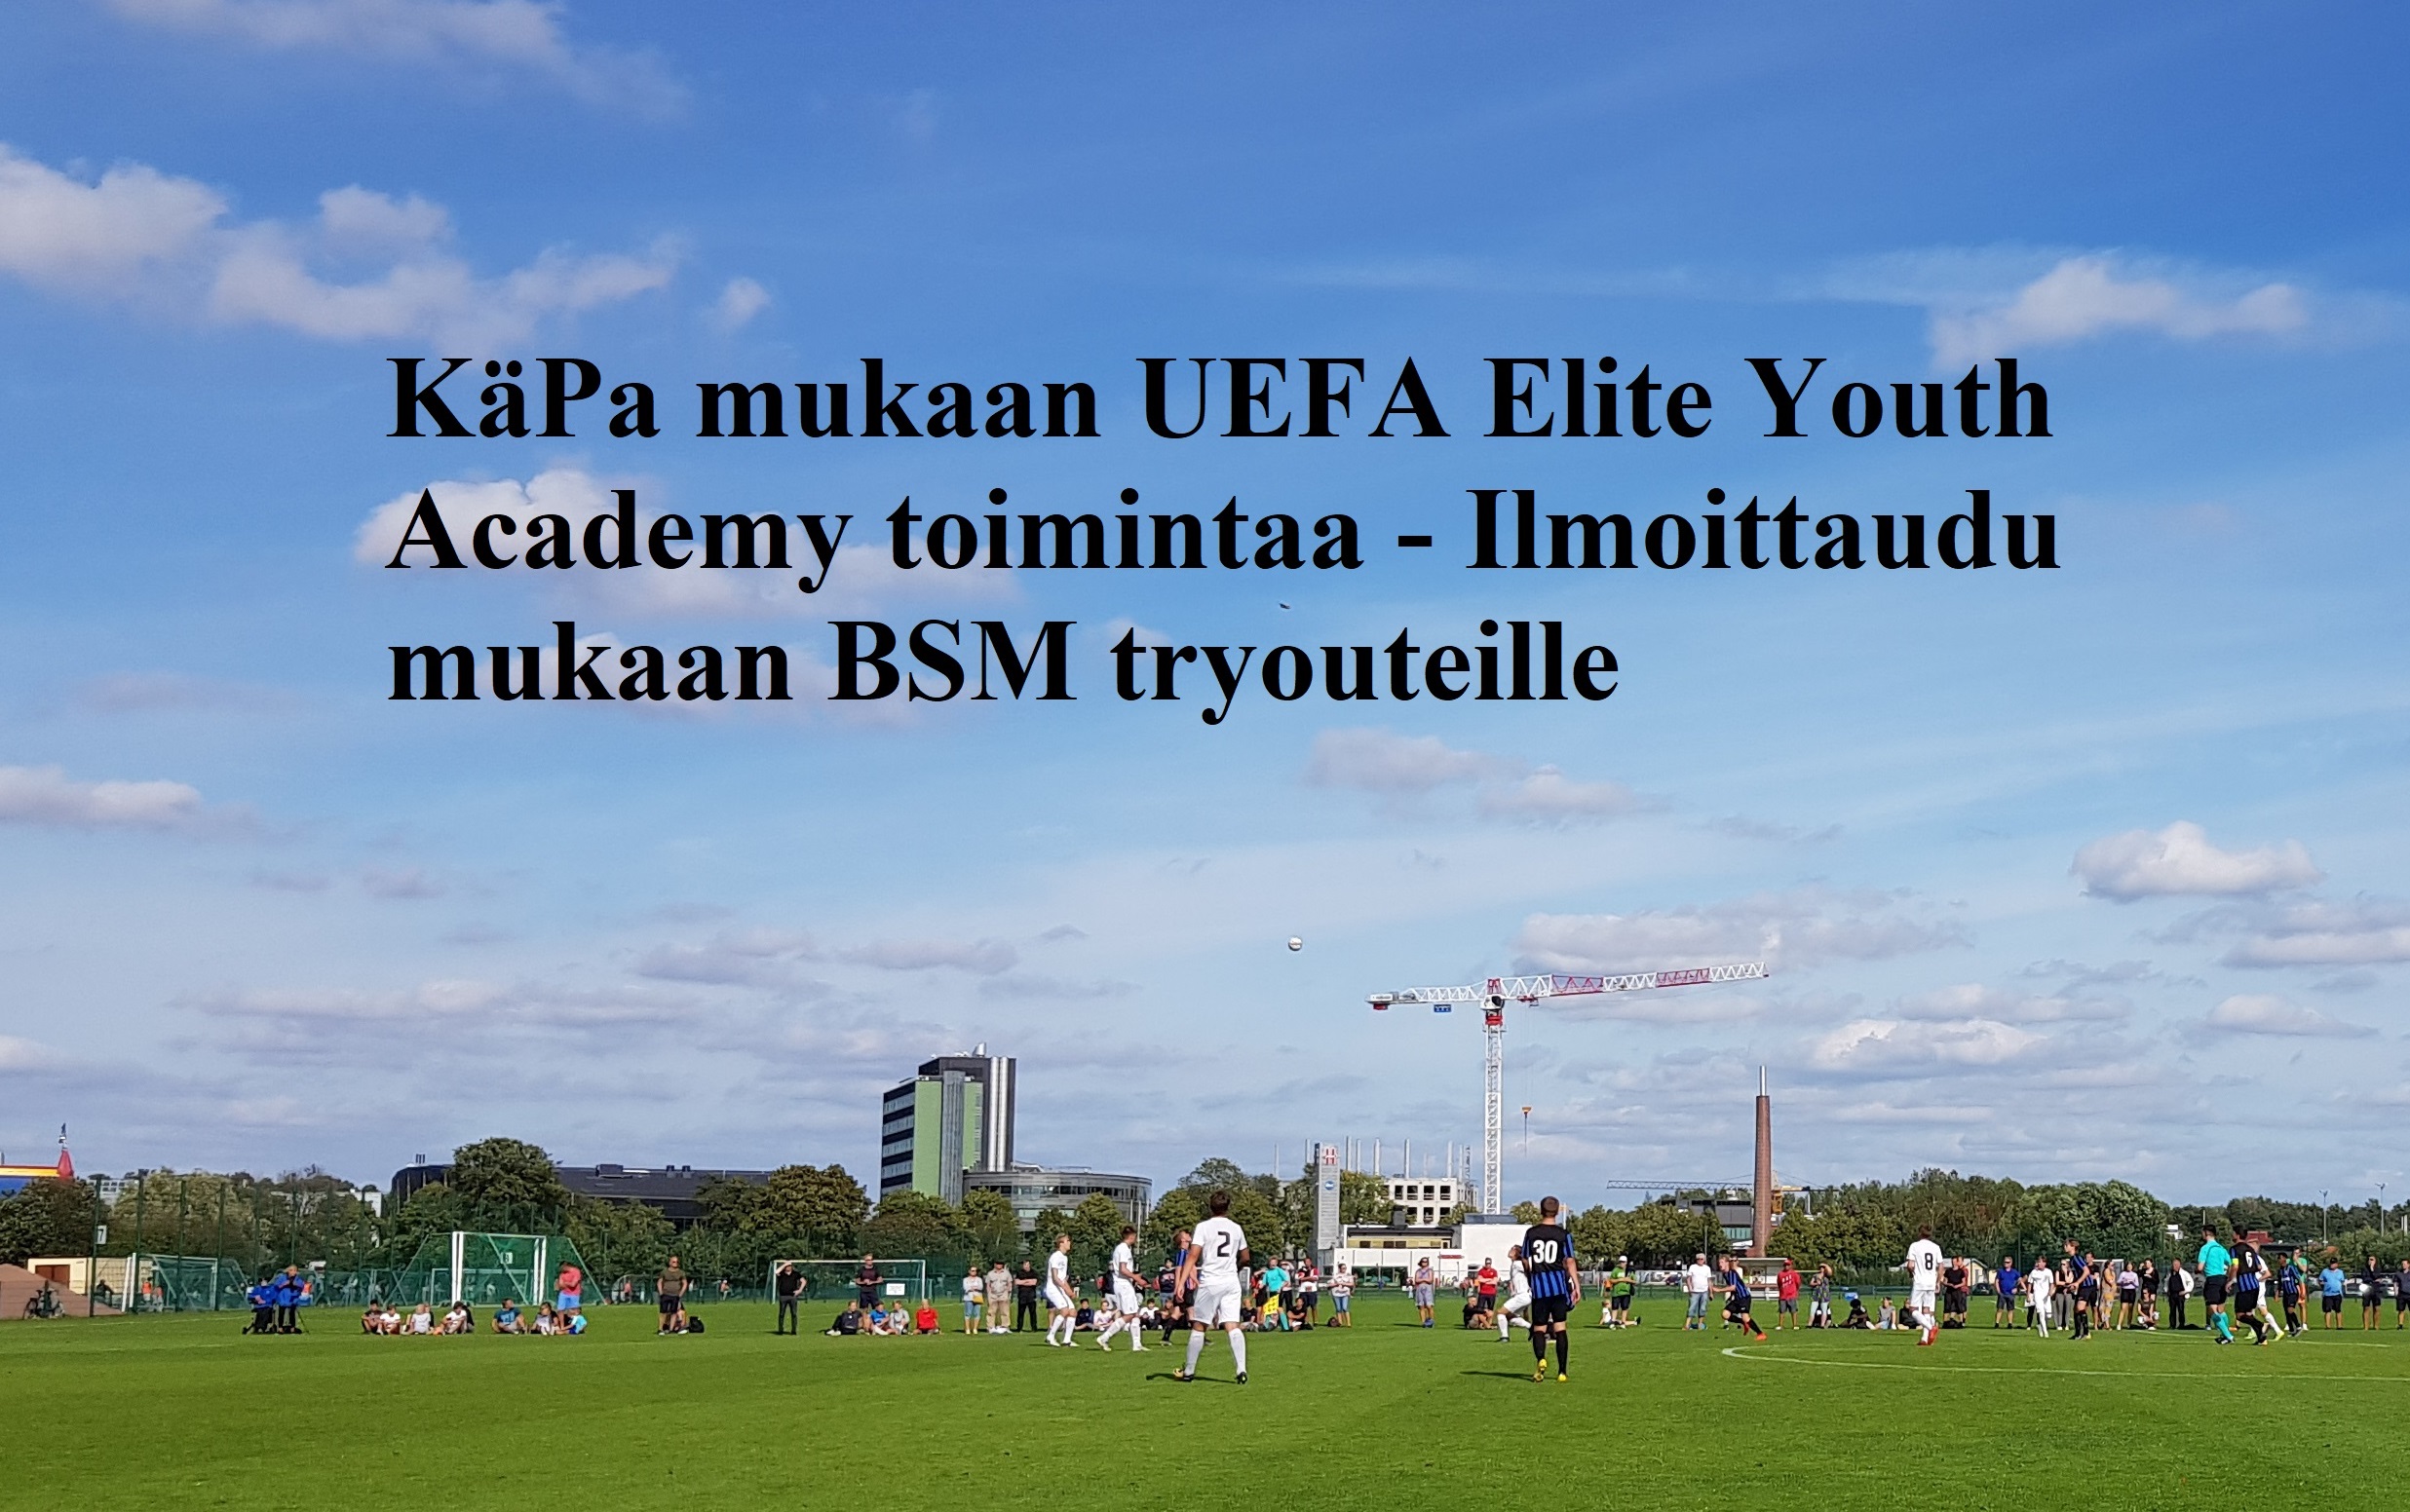 KäPa mukaan Elite Youth Academy toimintaan